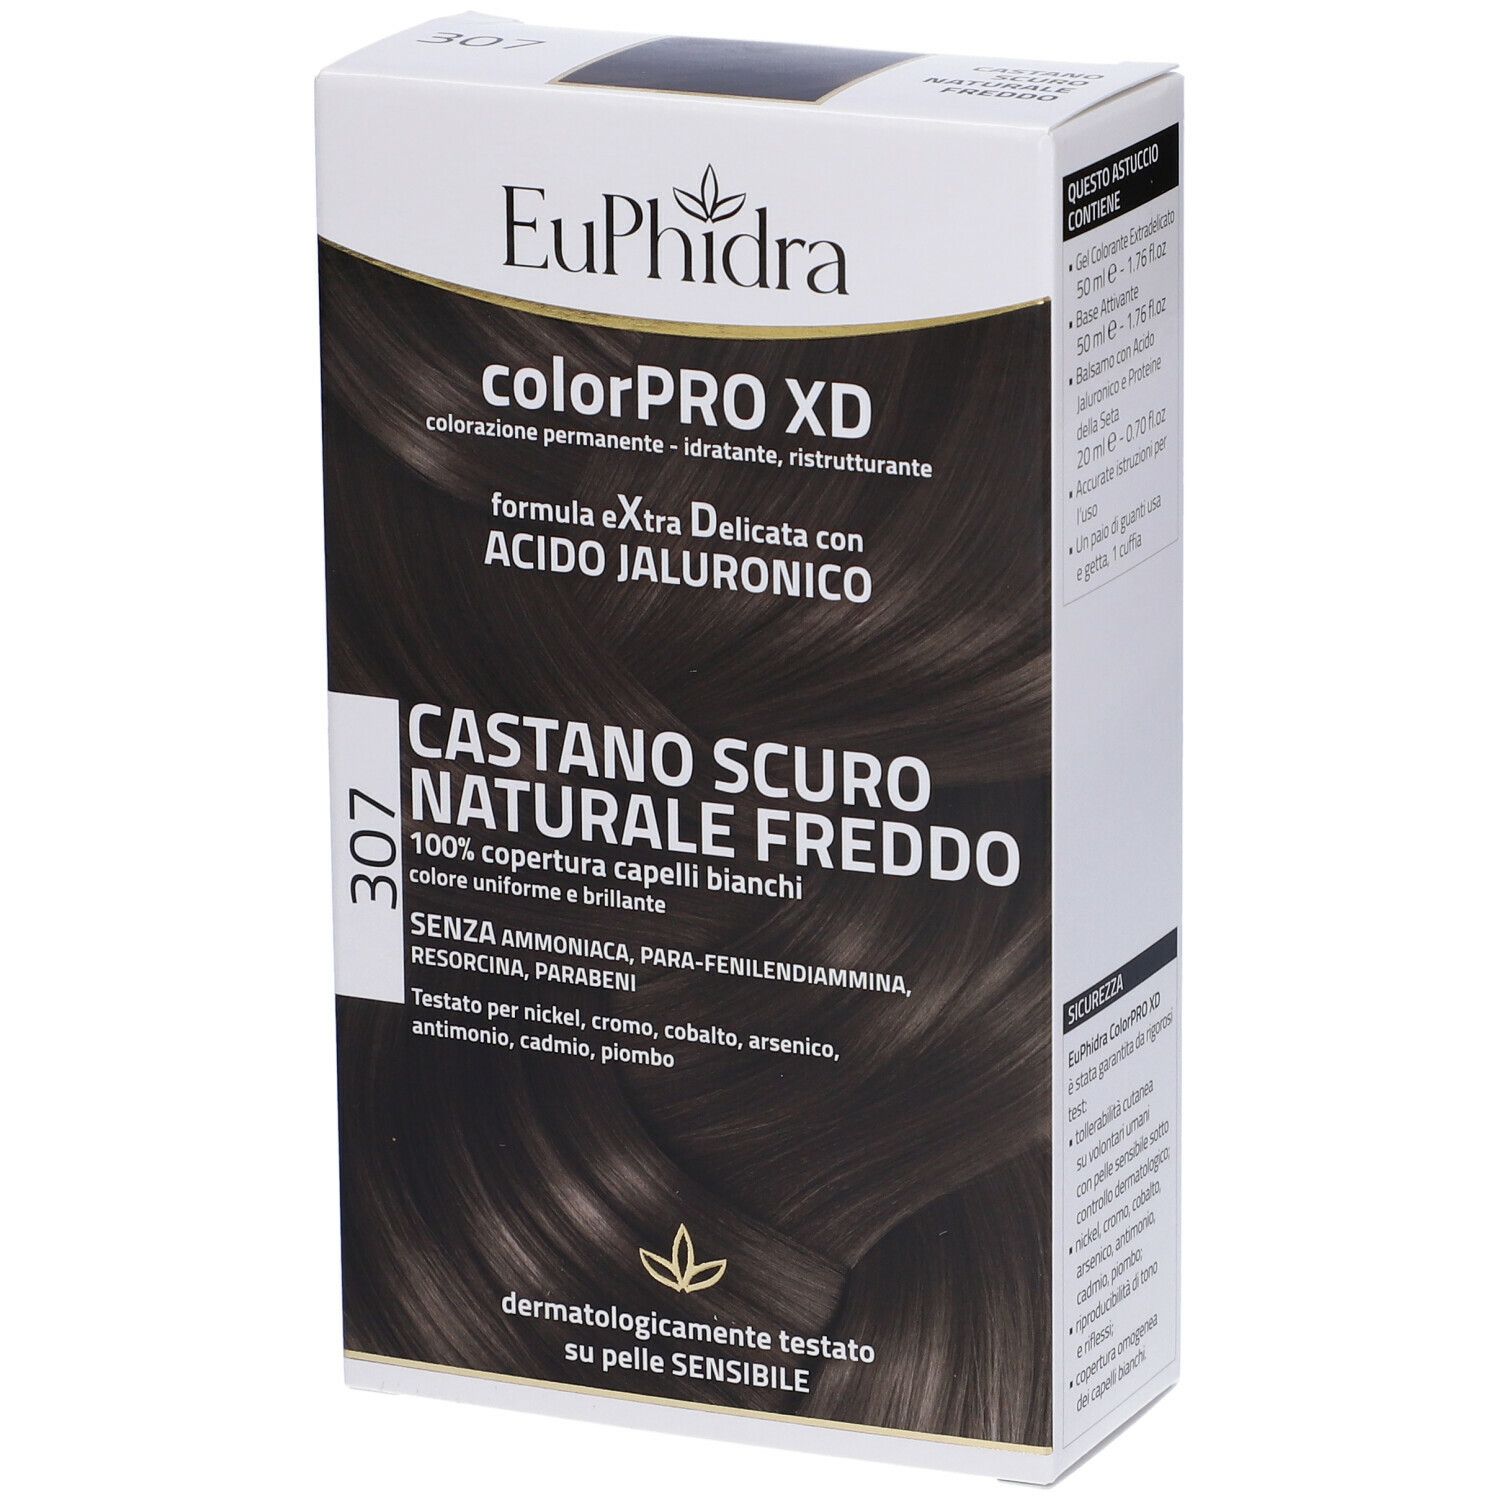 Euphidra ColorPRO XD Castano Scuro Naturale Freddo 307